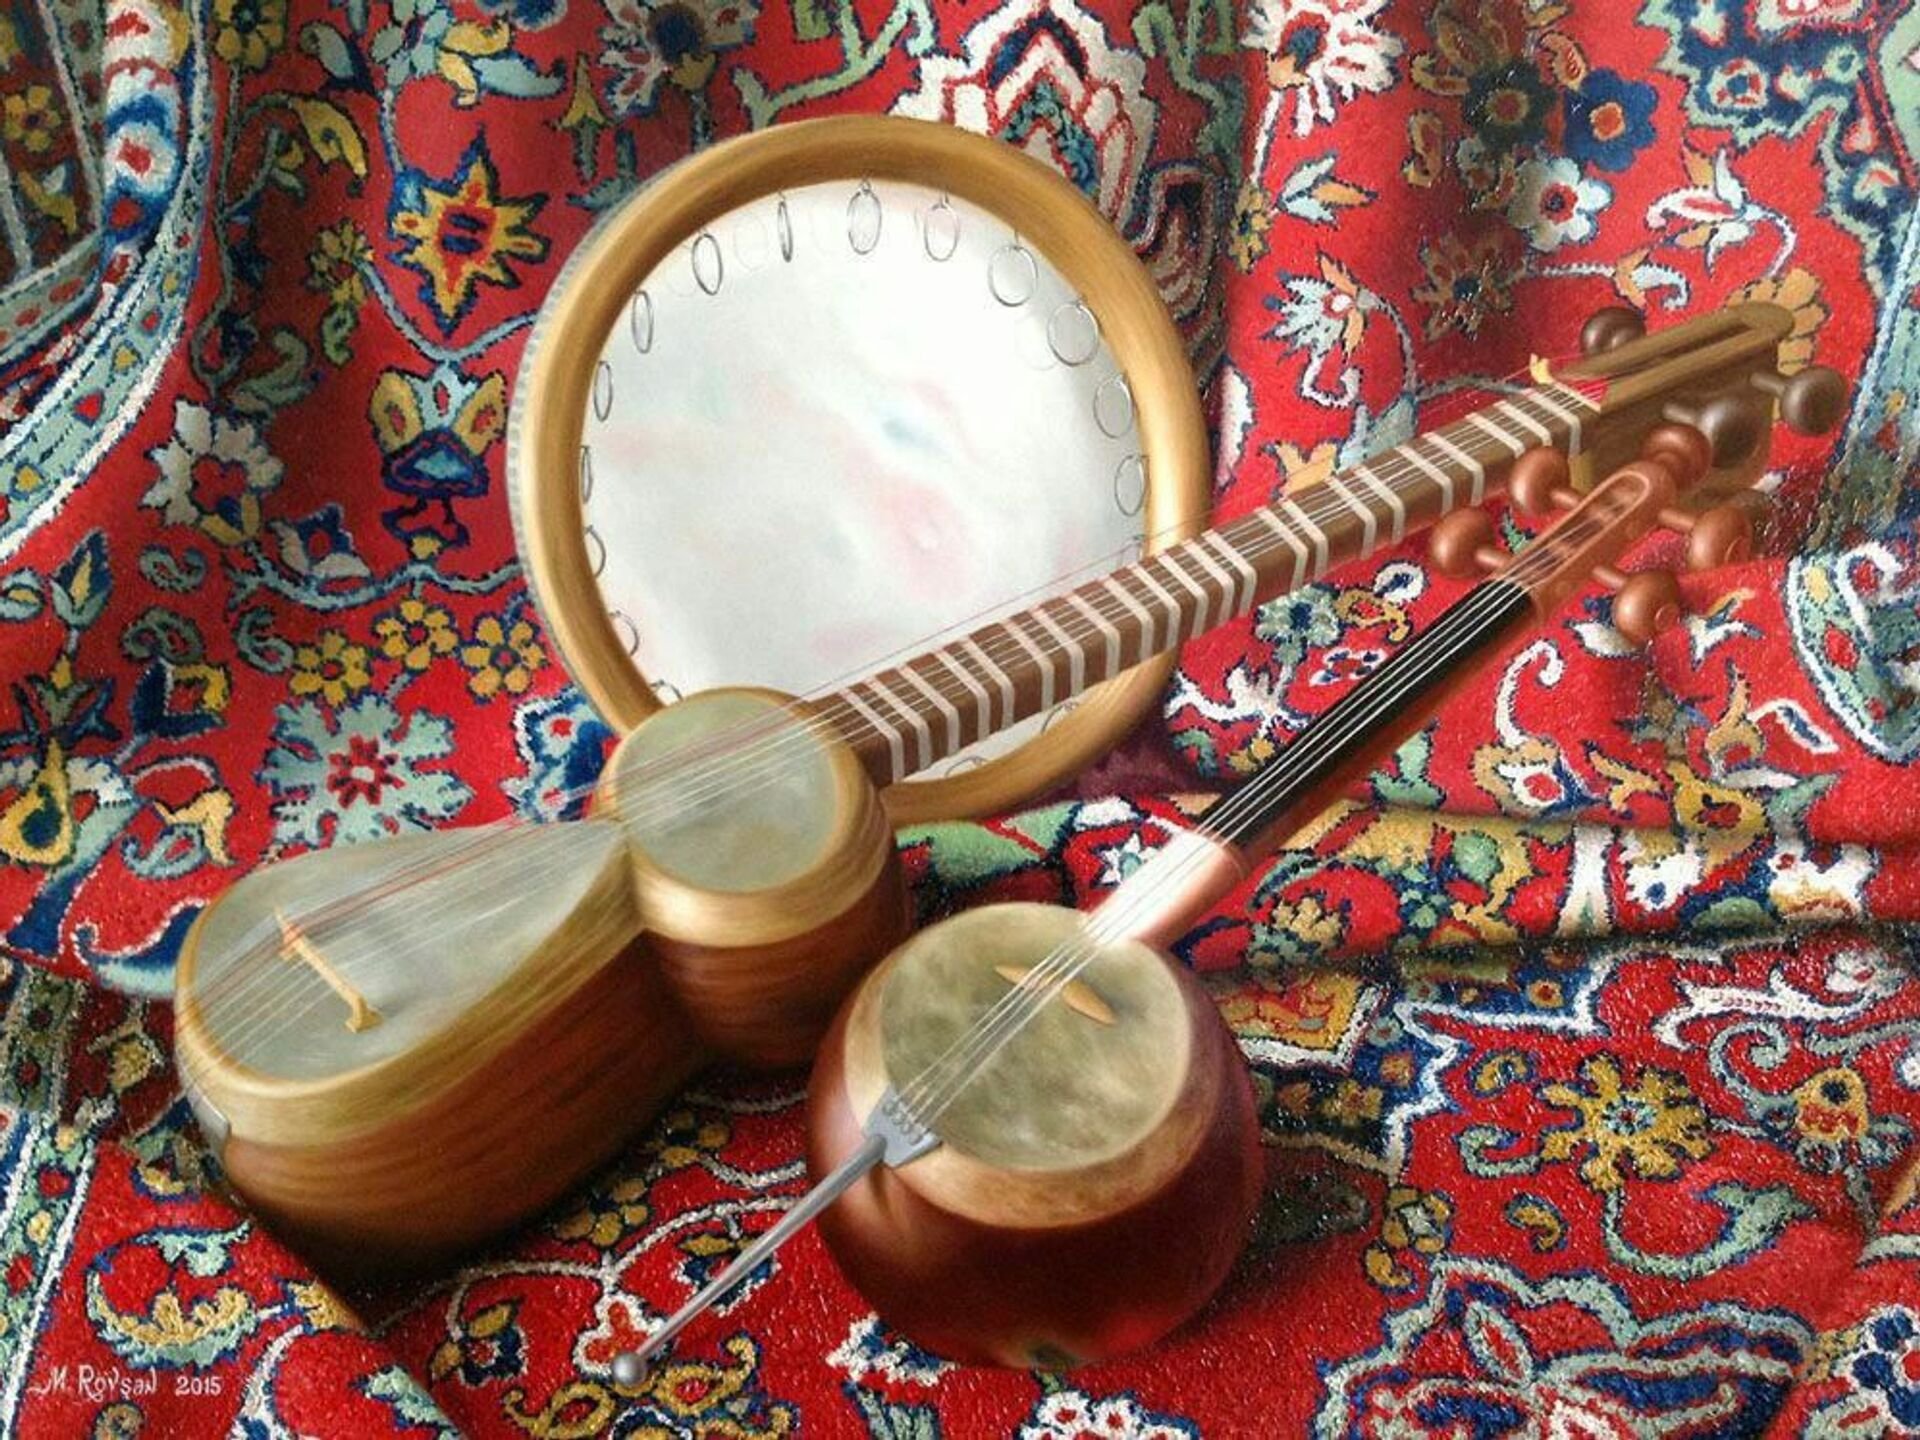 Таджикский инструмент. Узбекский музыкальный инструмент дойра. Узбекские музыкальные инструменты дутар. Народные инструменты Узбекистана дойра. Национальные музыкальные инструменты Таджикистана.